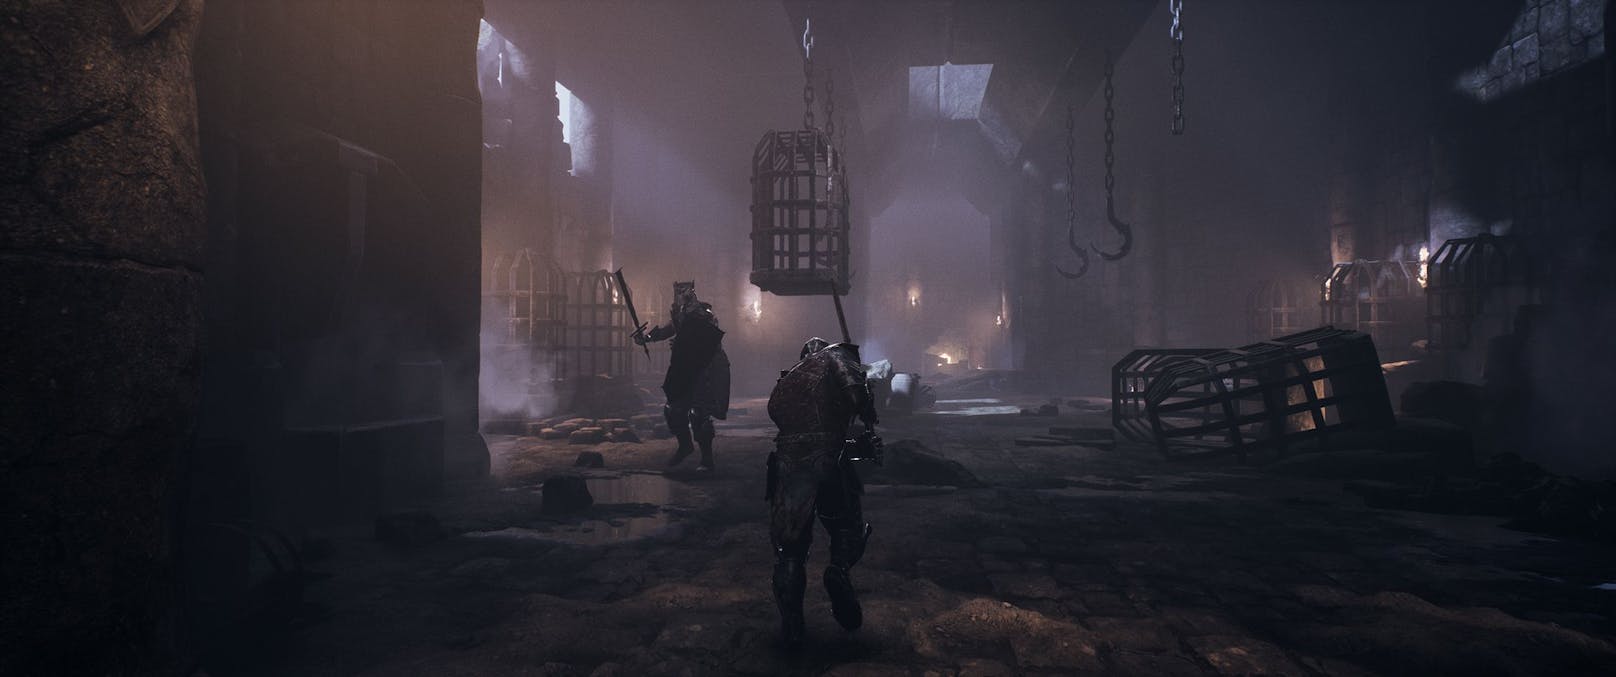 Der Spieler schlüpft dabei anfangs in die Haut eines humanoid aussehenden "Findlings", der fast nackt und wehrlos durch eine düstere Welt schleicht.